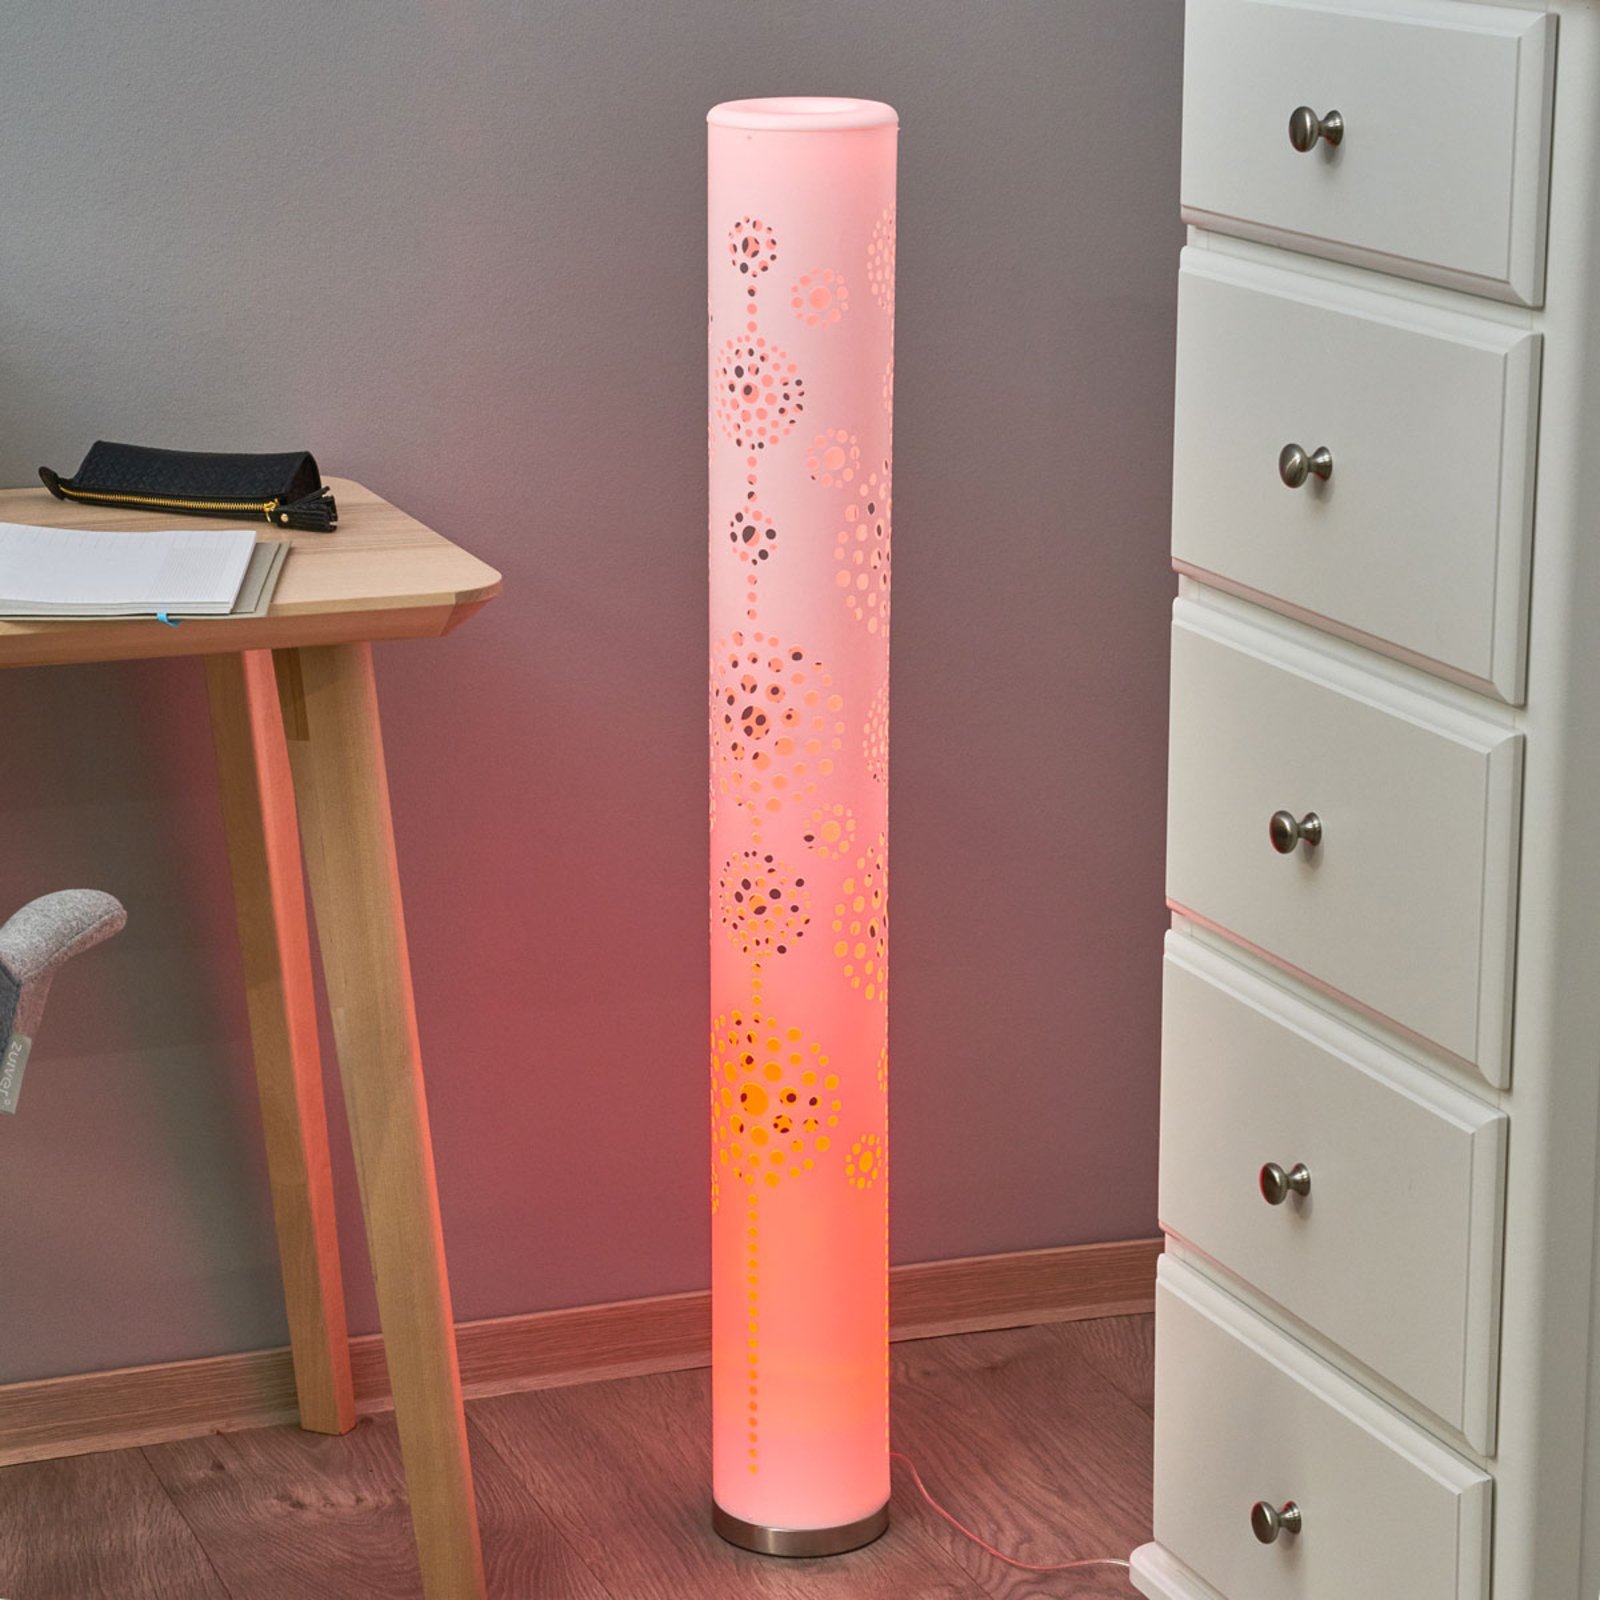 Lampadaire LED RGB avec télécommande avec changeur de couleur Lampe DESIGN  lampe éclairage salon-salle à